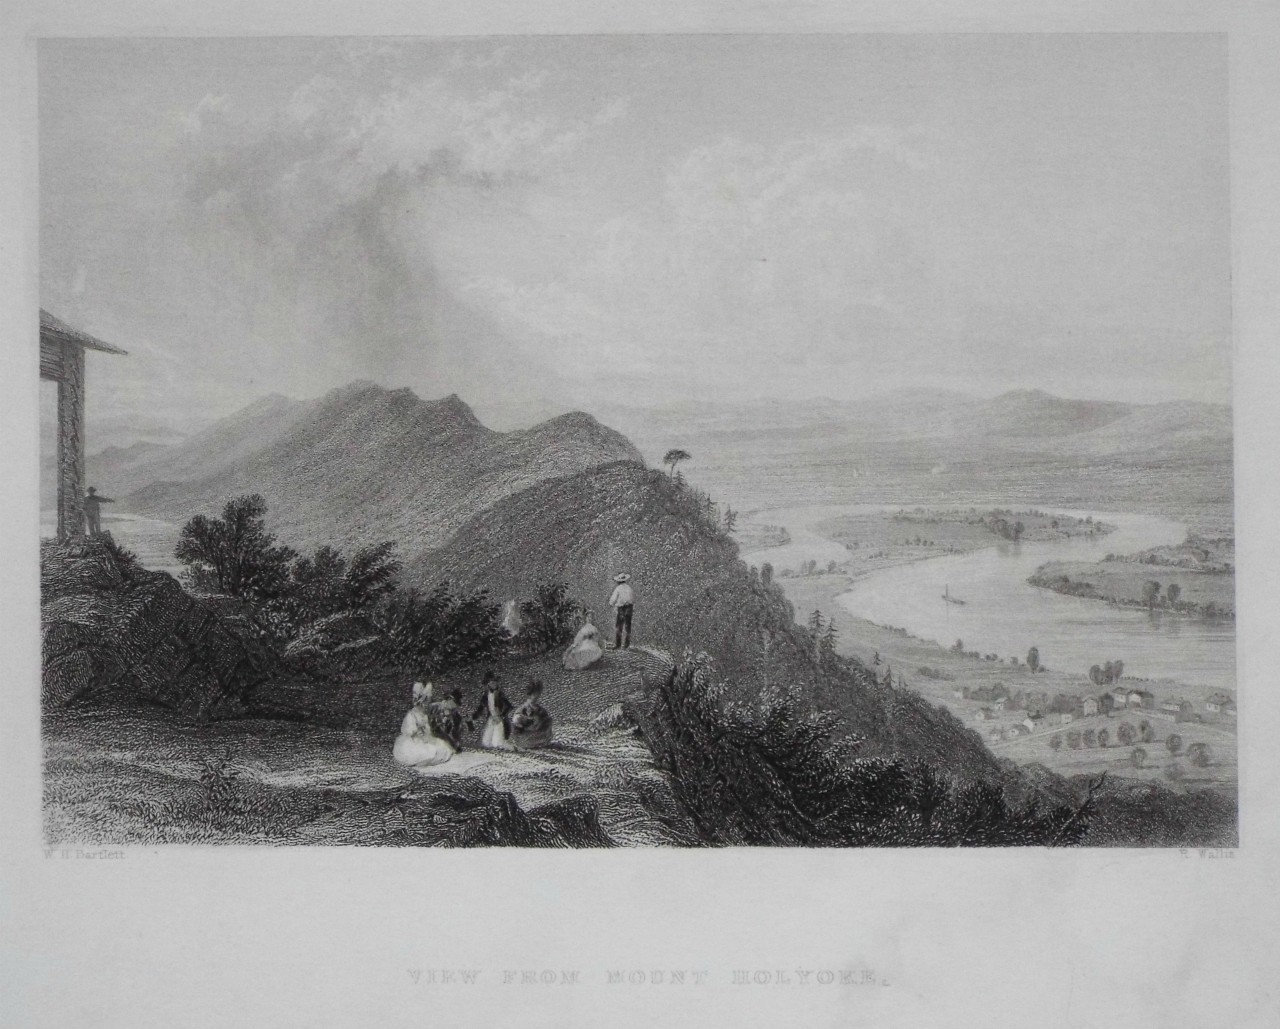 Print - View from Mount Holyoke. - Wallis